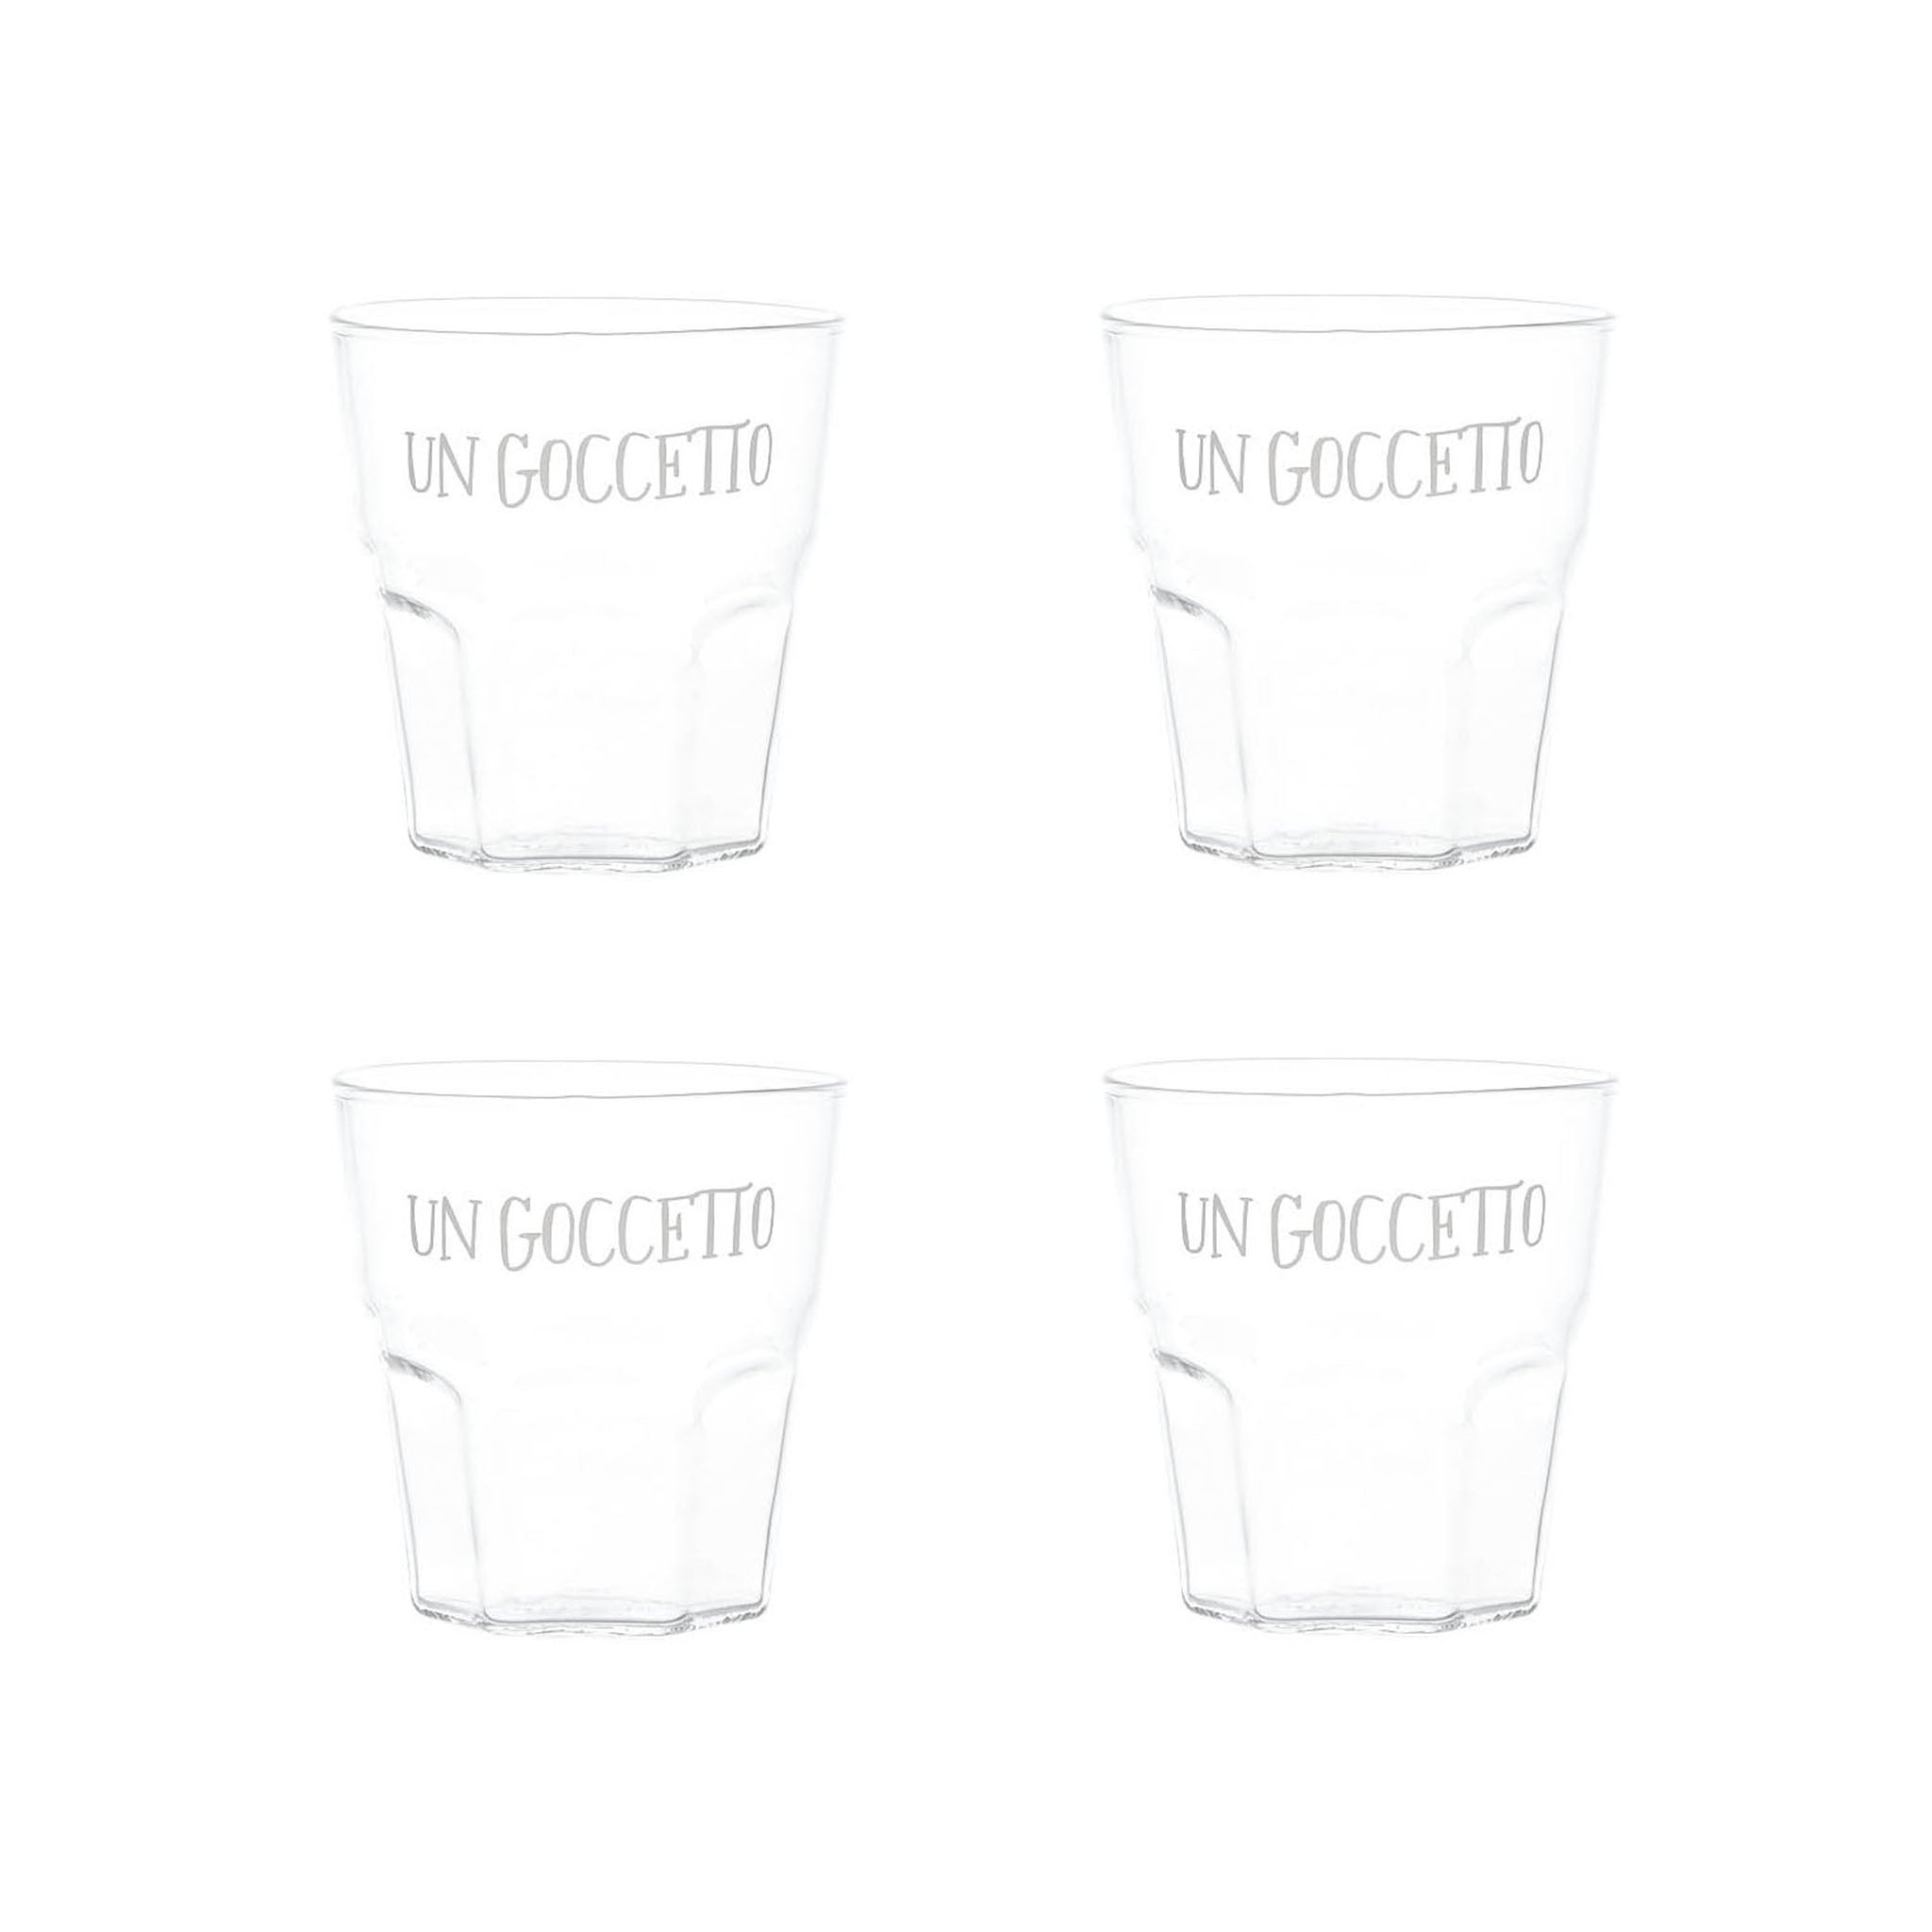 Liquor Glass "Un Goccetto" in White - Set of 4